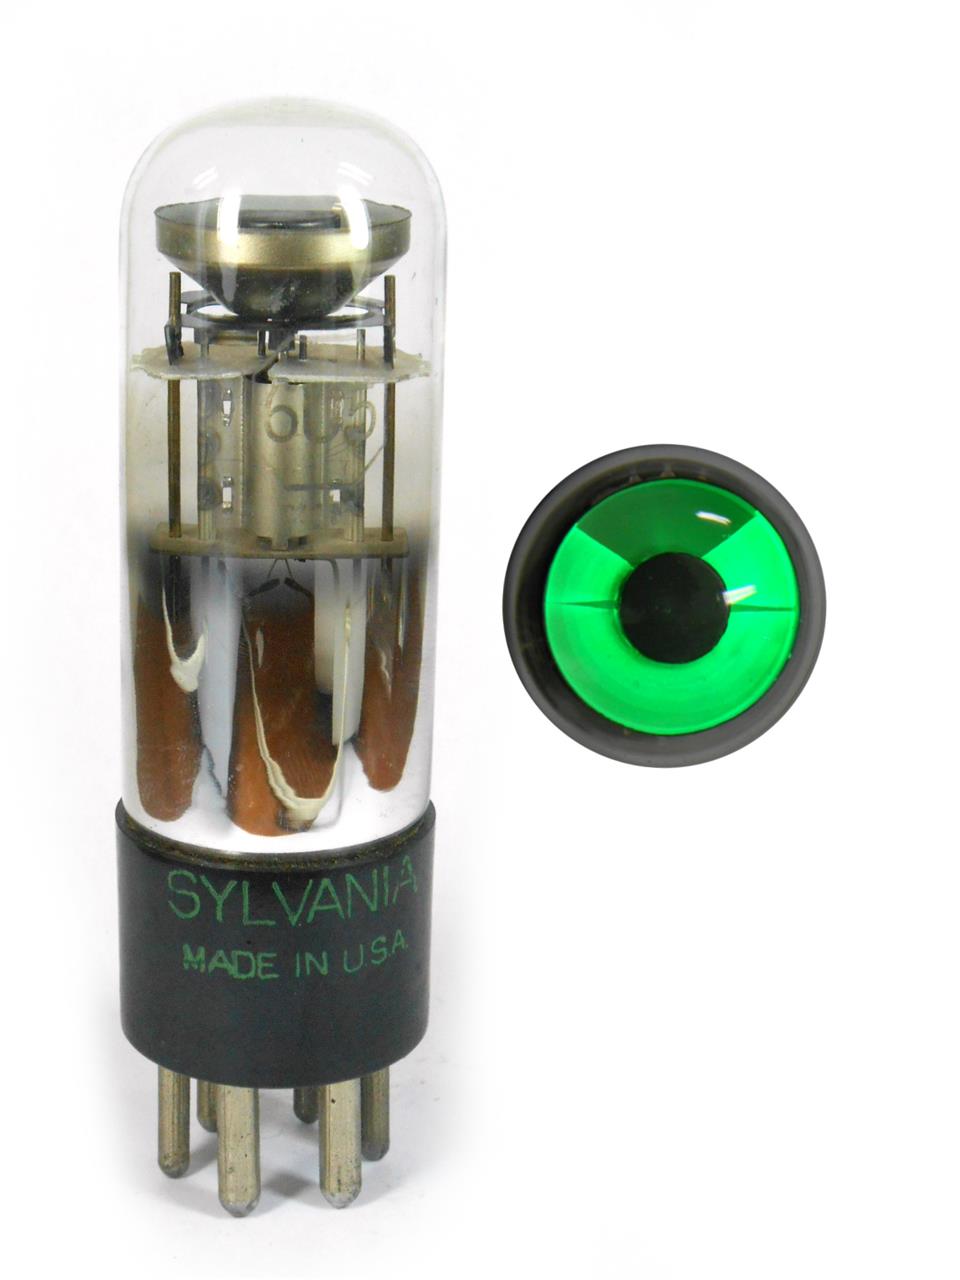 Válvulas Indicadoras de Sintonia Tipo Olho Mágico - Válvula 6U5/6G5 Sylvania